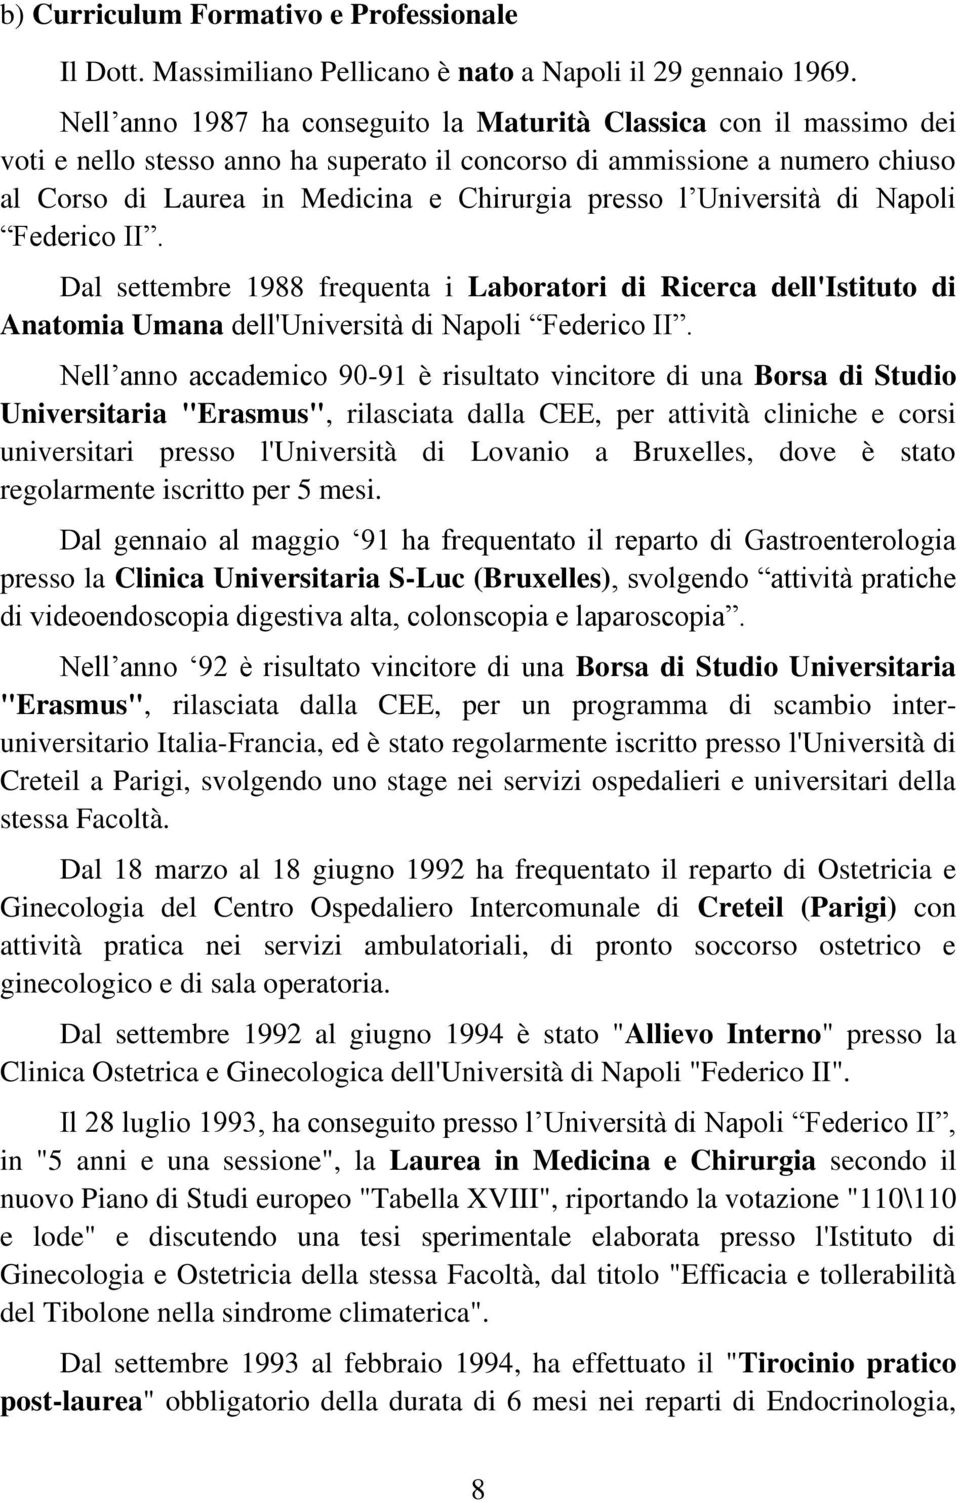 Università di Napoli Federico II. Dal settembre 1988 frequenta i Laboratori di Ricerca dell'istituto di Anatomia Umana dell'università di Napoli Federico II.